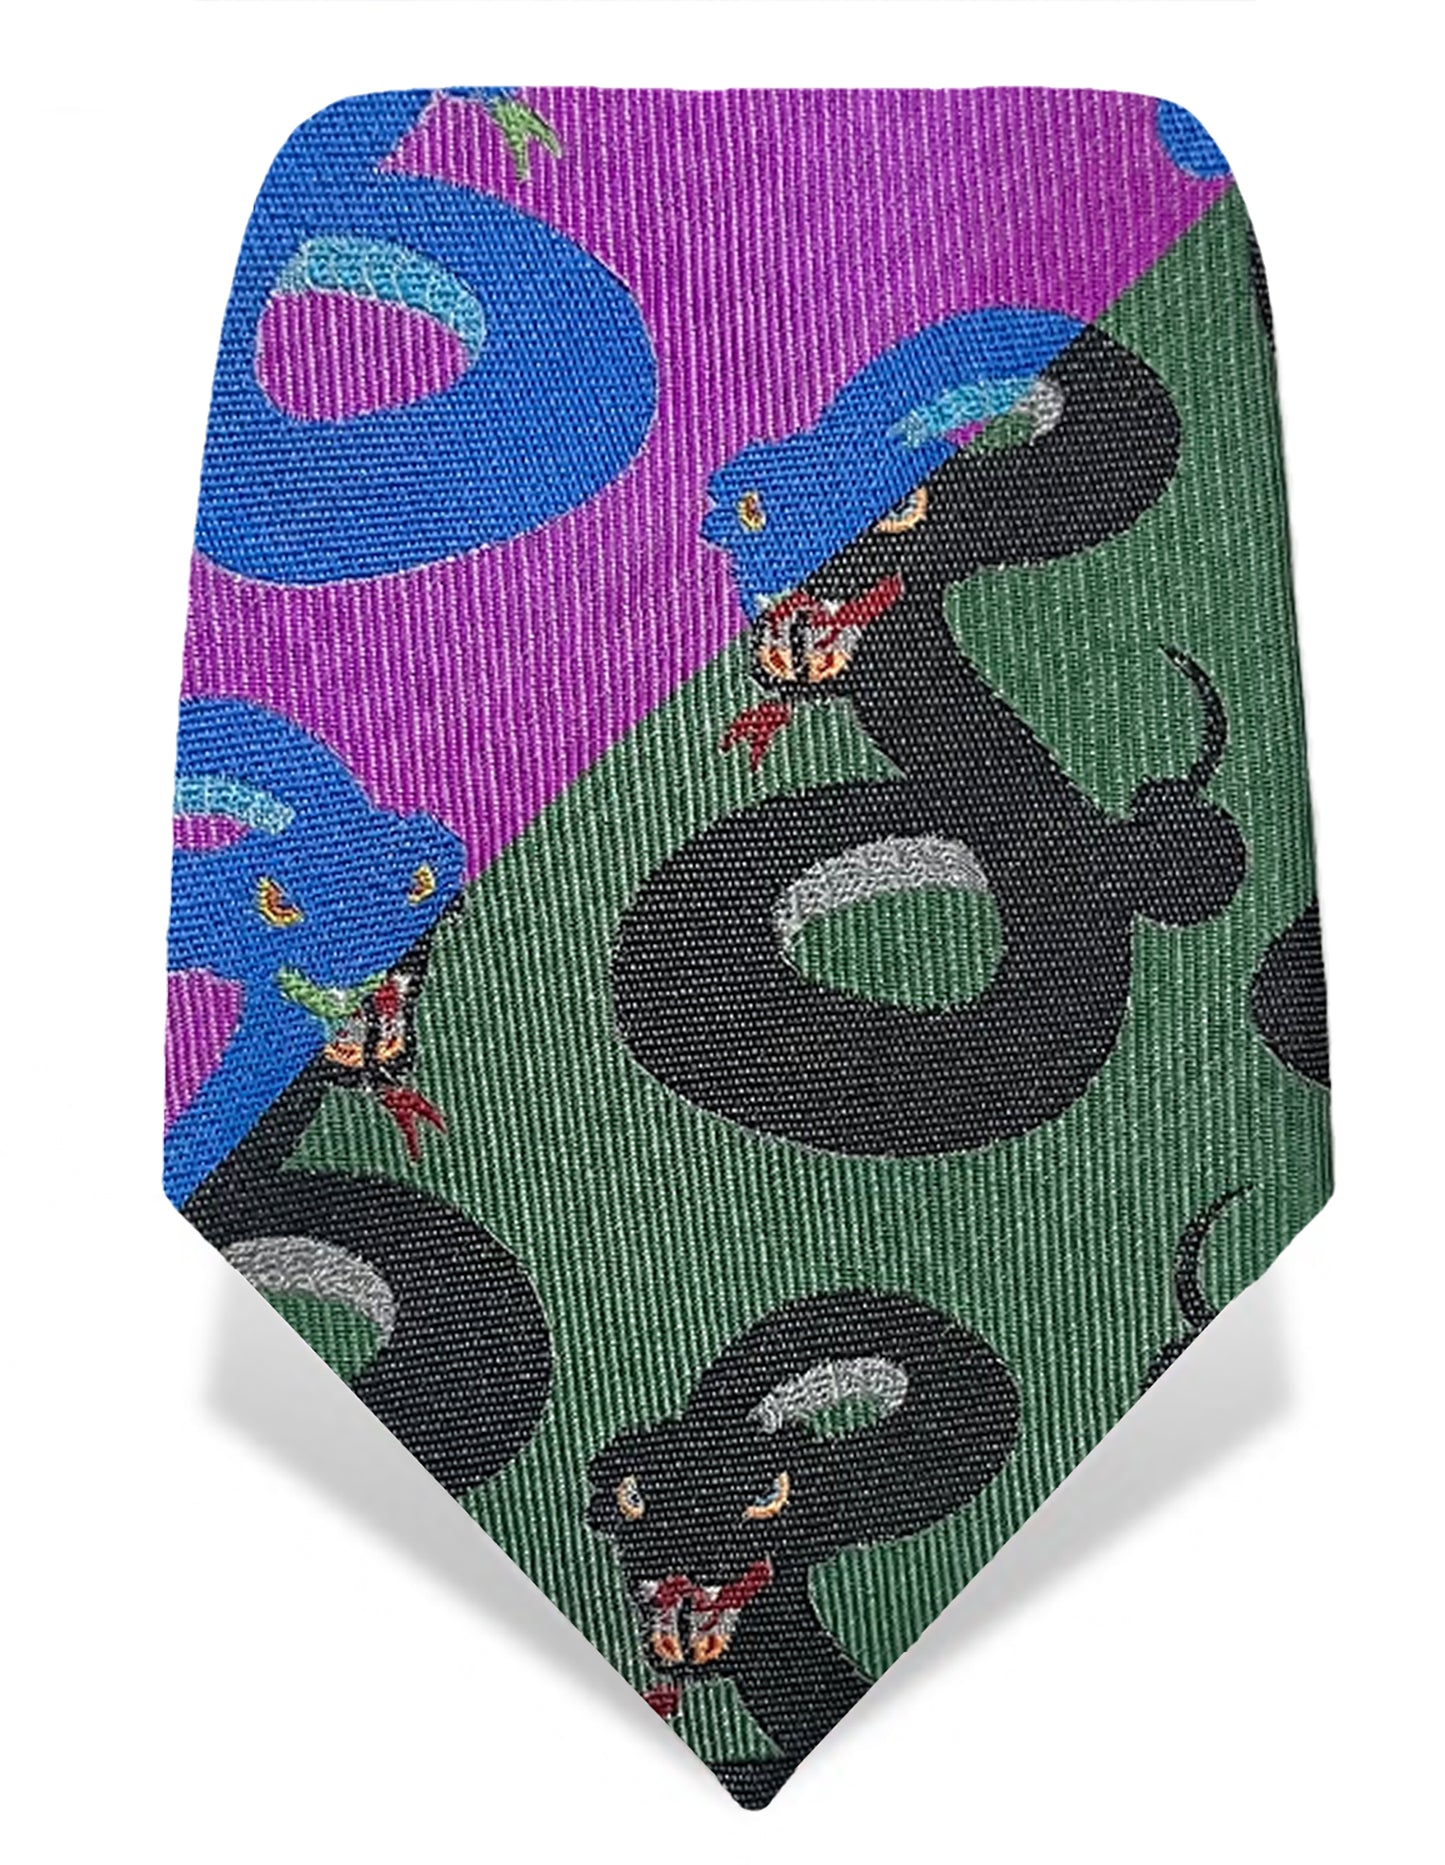 snakes design silk tie for men